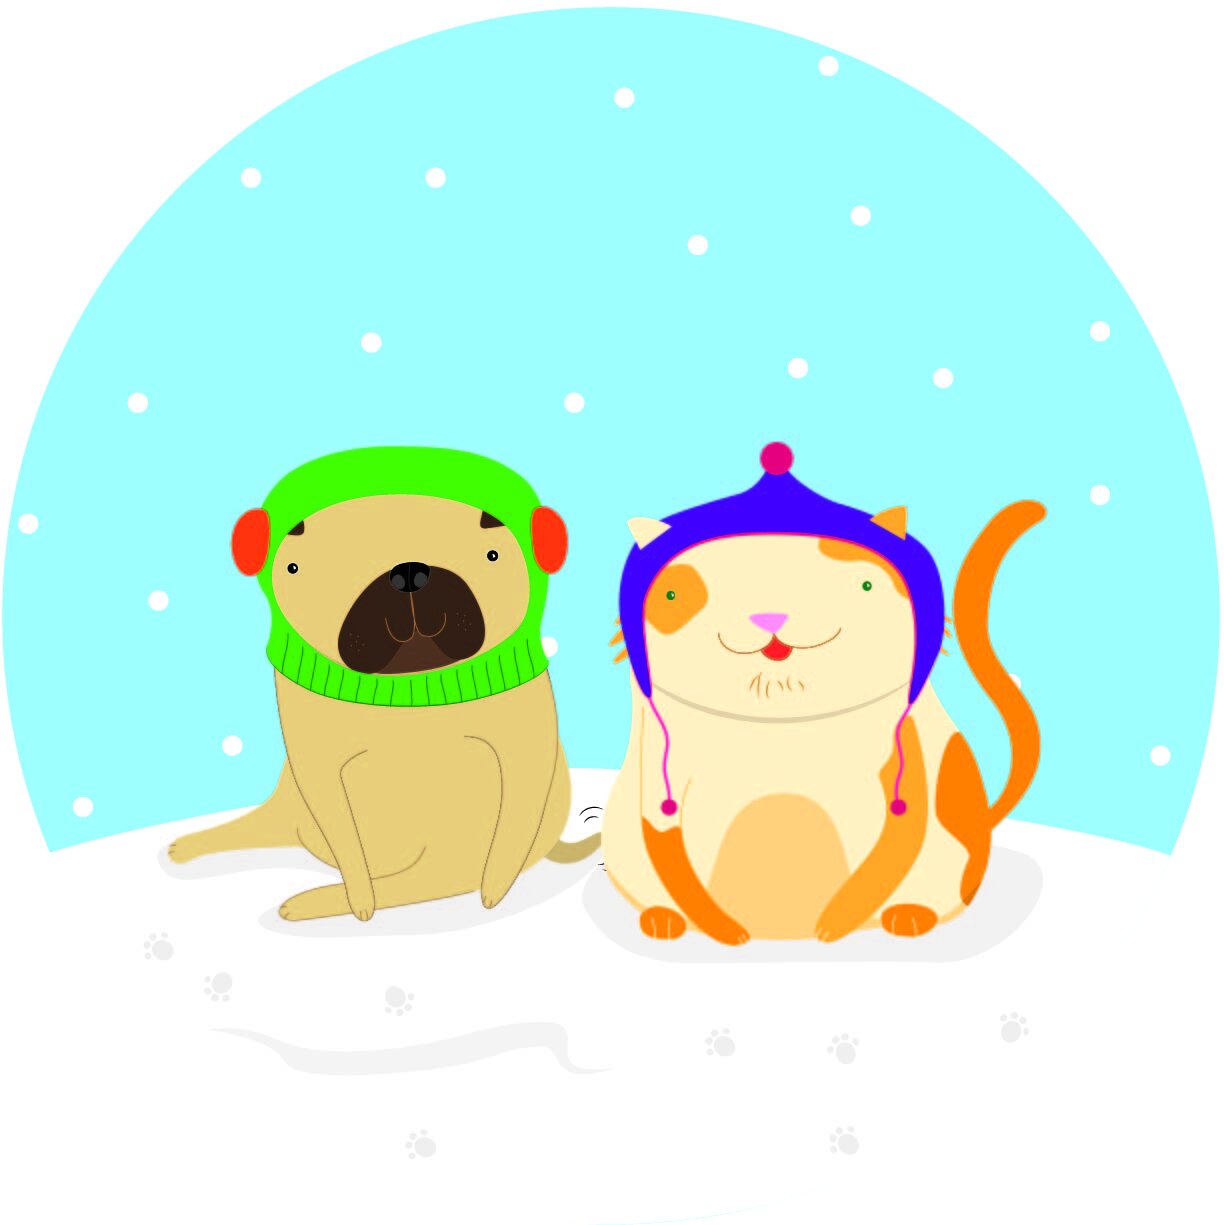 Pug and Cat Reindeers 01-04.jpg